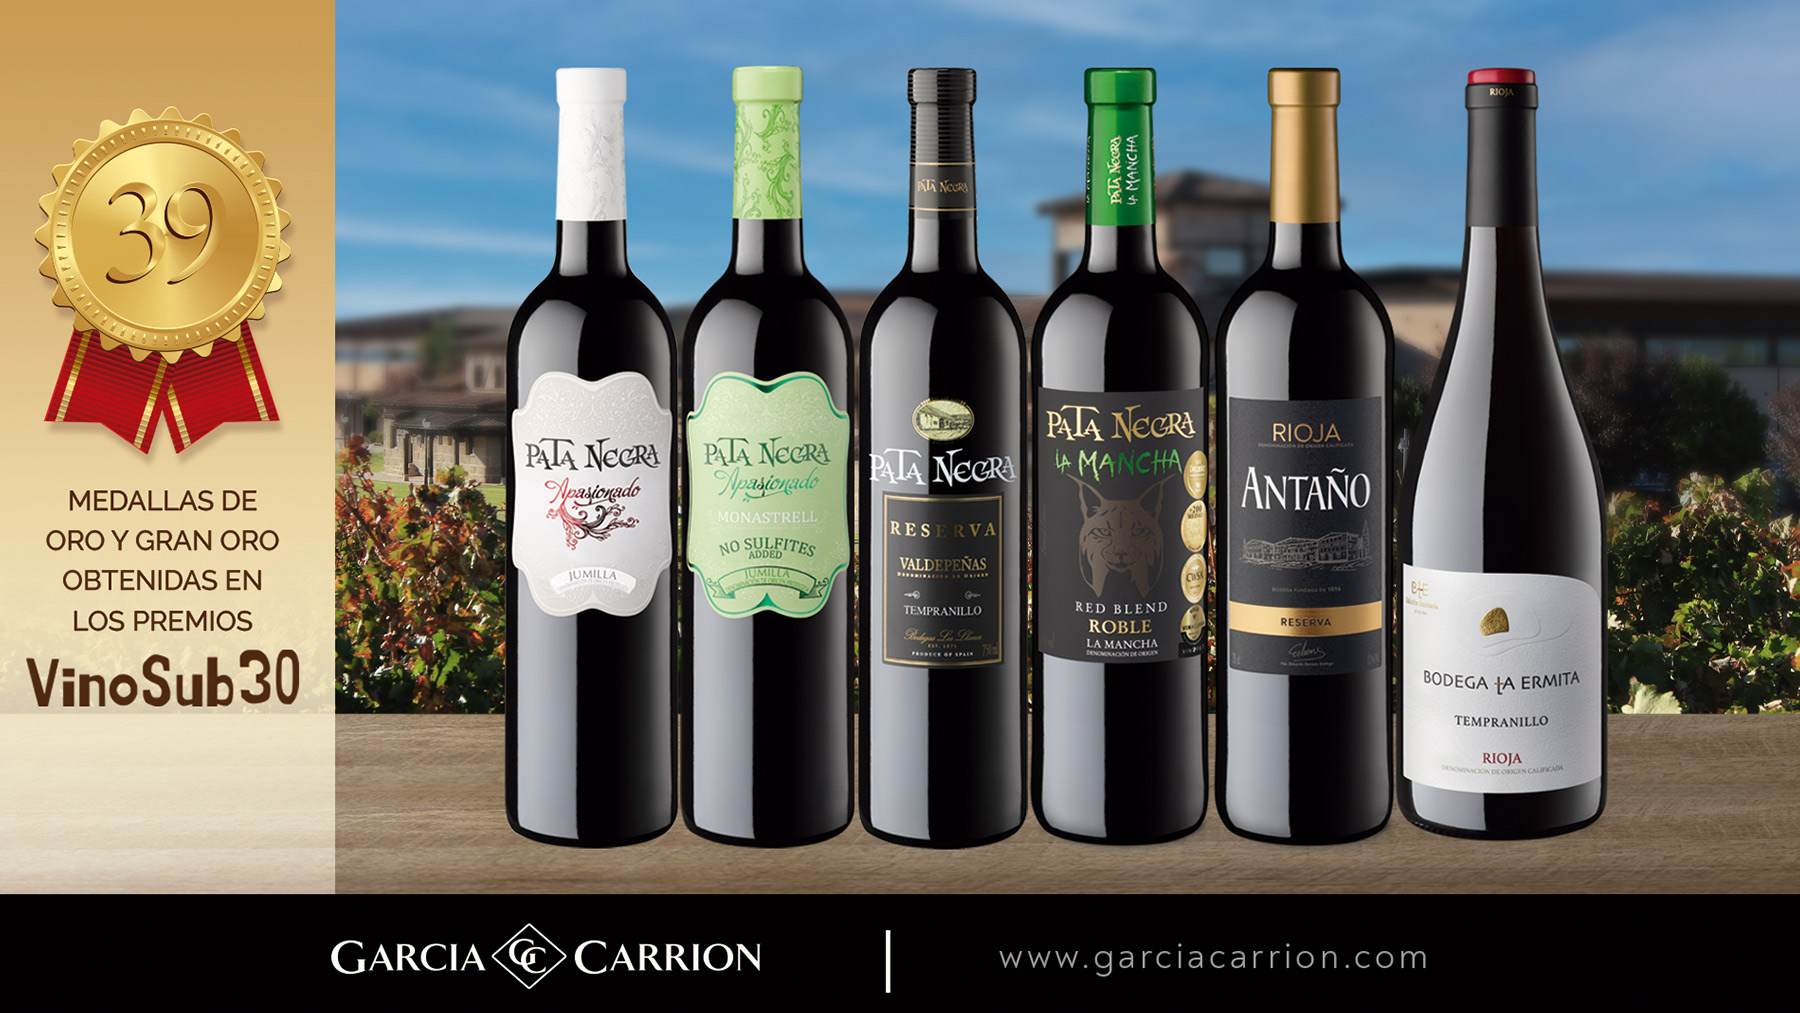 GARCIA CARRION lanza una edición especial de vino PATA NEGRA 'Fauna  Ibérica' Toro, La Mancha y Rioja